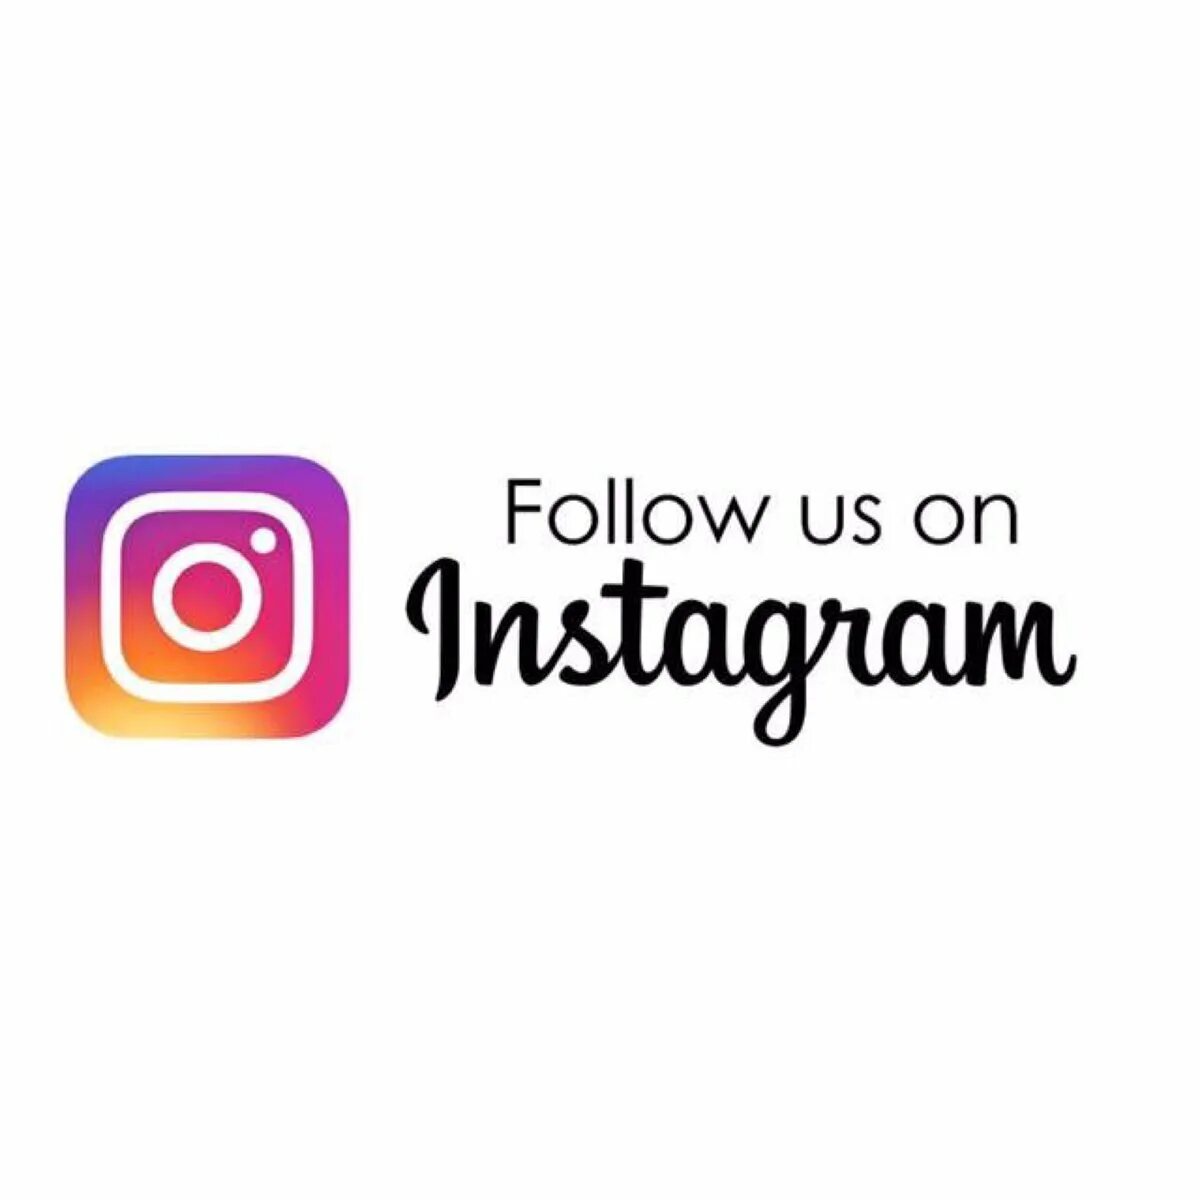 Better follow us now. Follow Инстаграм. Follow on Instagram. Follow us on. Follow us in Instagram.